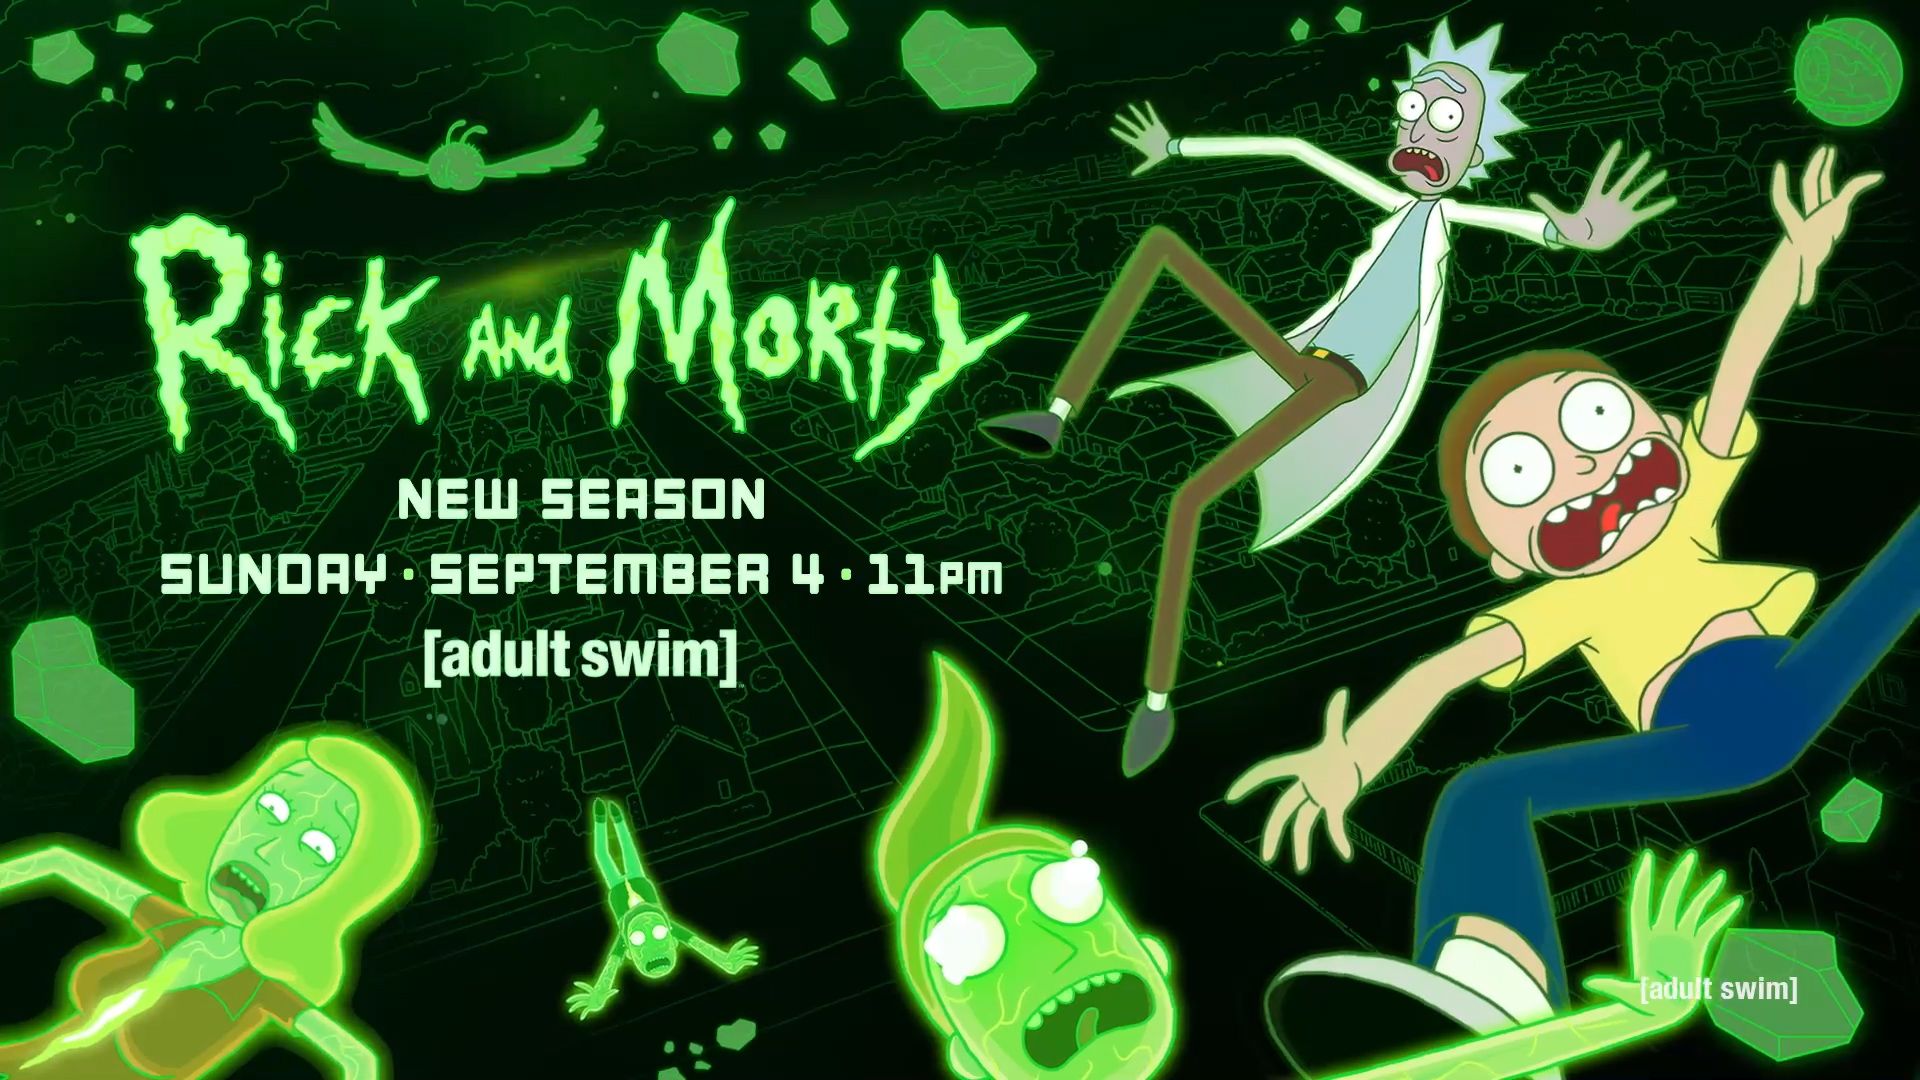 Season 6. Rick and Morty